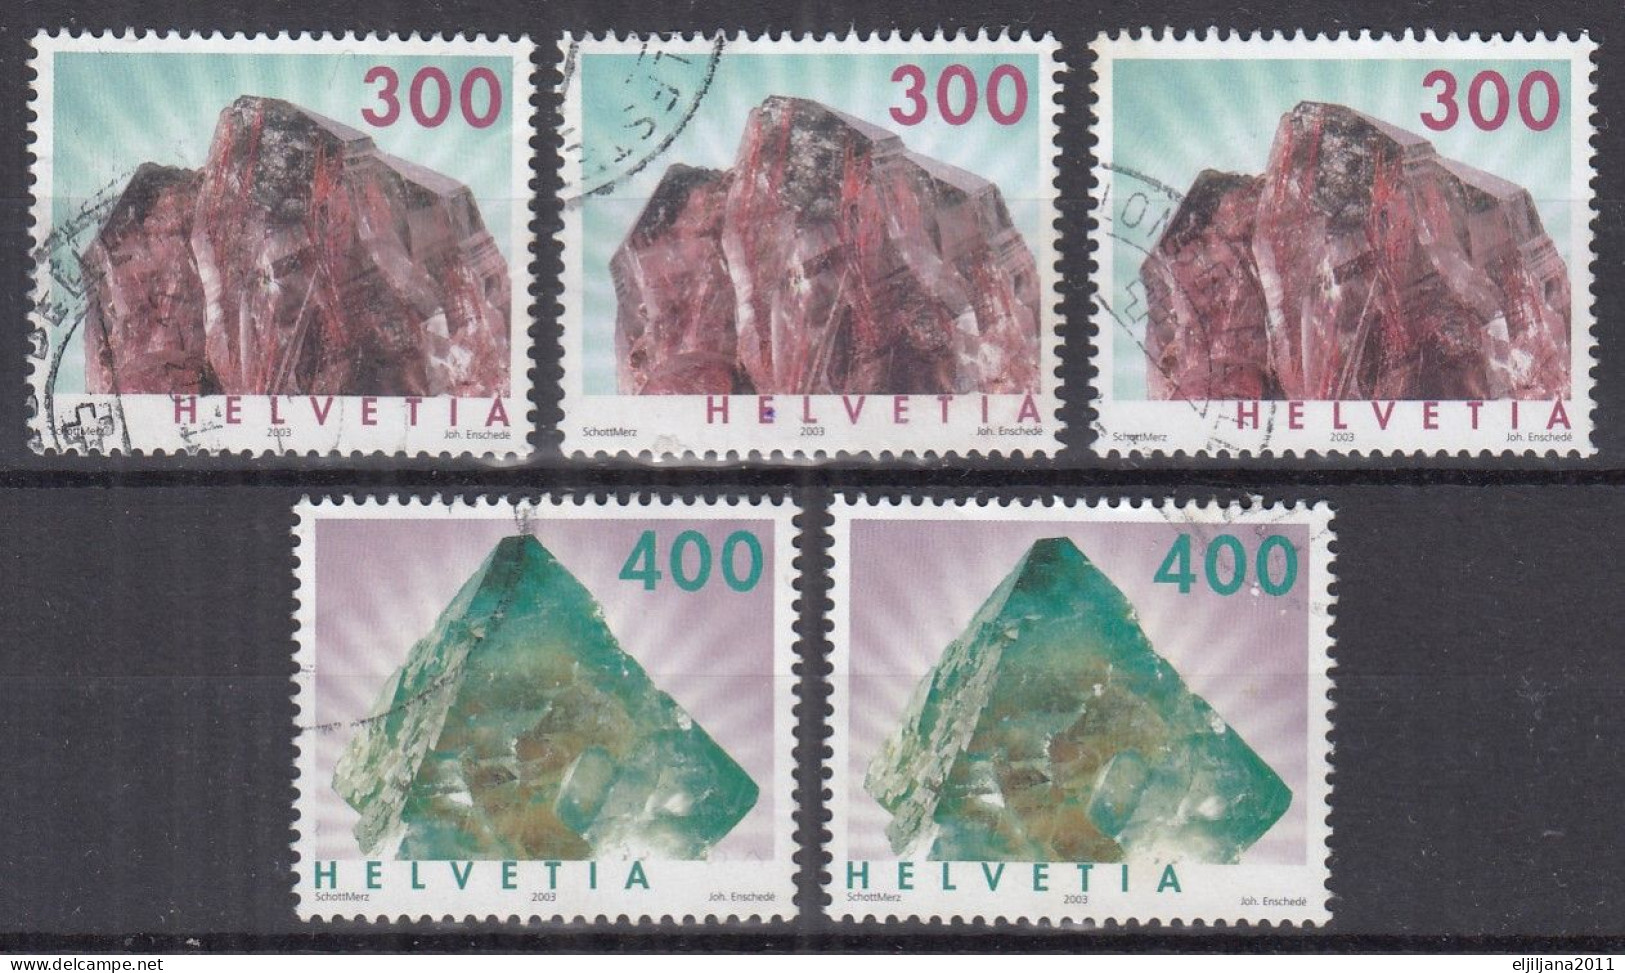 Switzerland / Helvetia / Schweiz / Suisse 2003 ⁕ Minerals Mi.1844-1845 ⁕ 5v Used - Usati